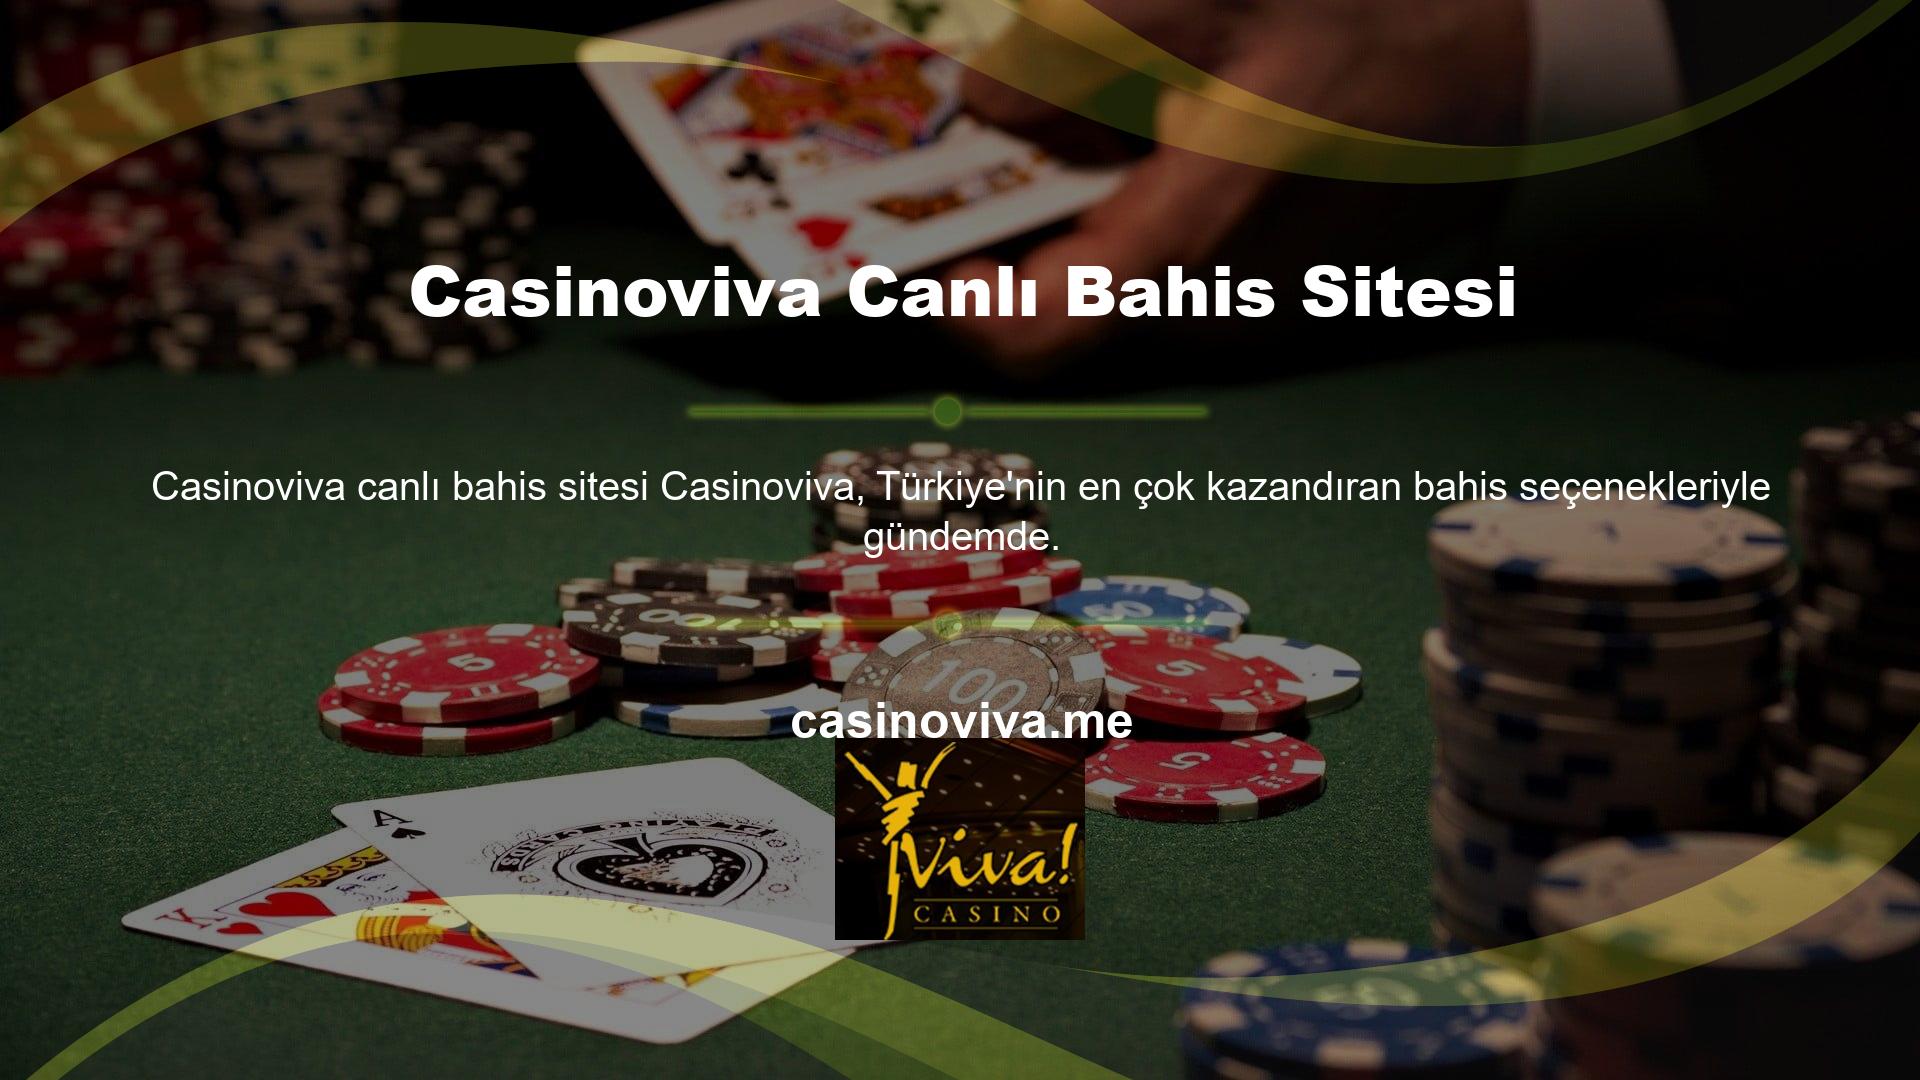 Casinoviva canlı bahis sitesi